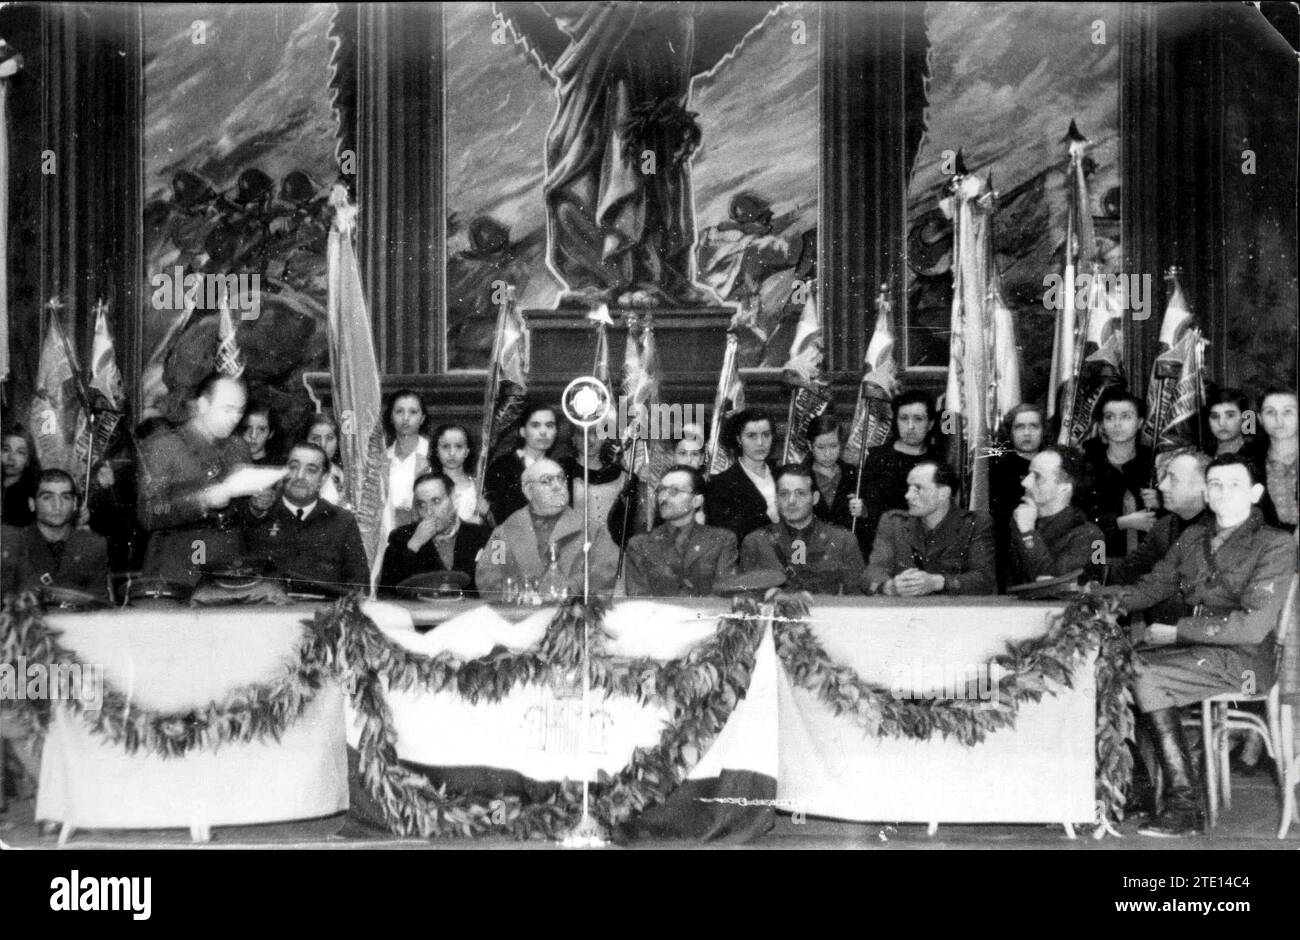 Tribut der Volksfront von Madrid an die Internationalen Brigaden, die am 31. Oktober 1937 stattfanden. General Miaja leitete die Veranstaltung. Quelle: Album / Archivo ABC / Albero y Segovia Stockfoto